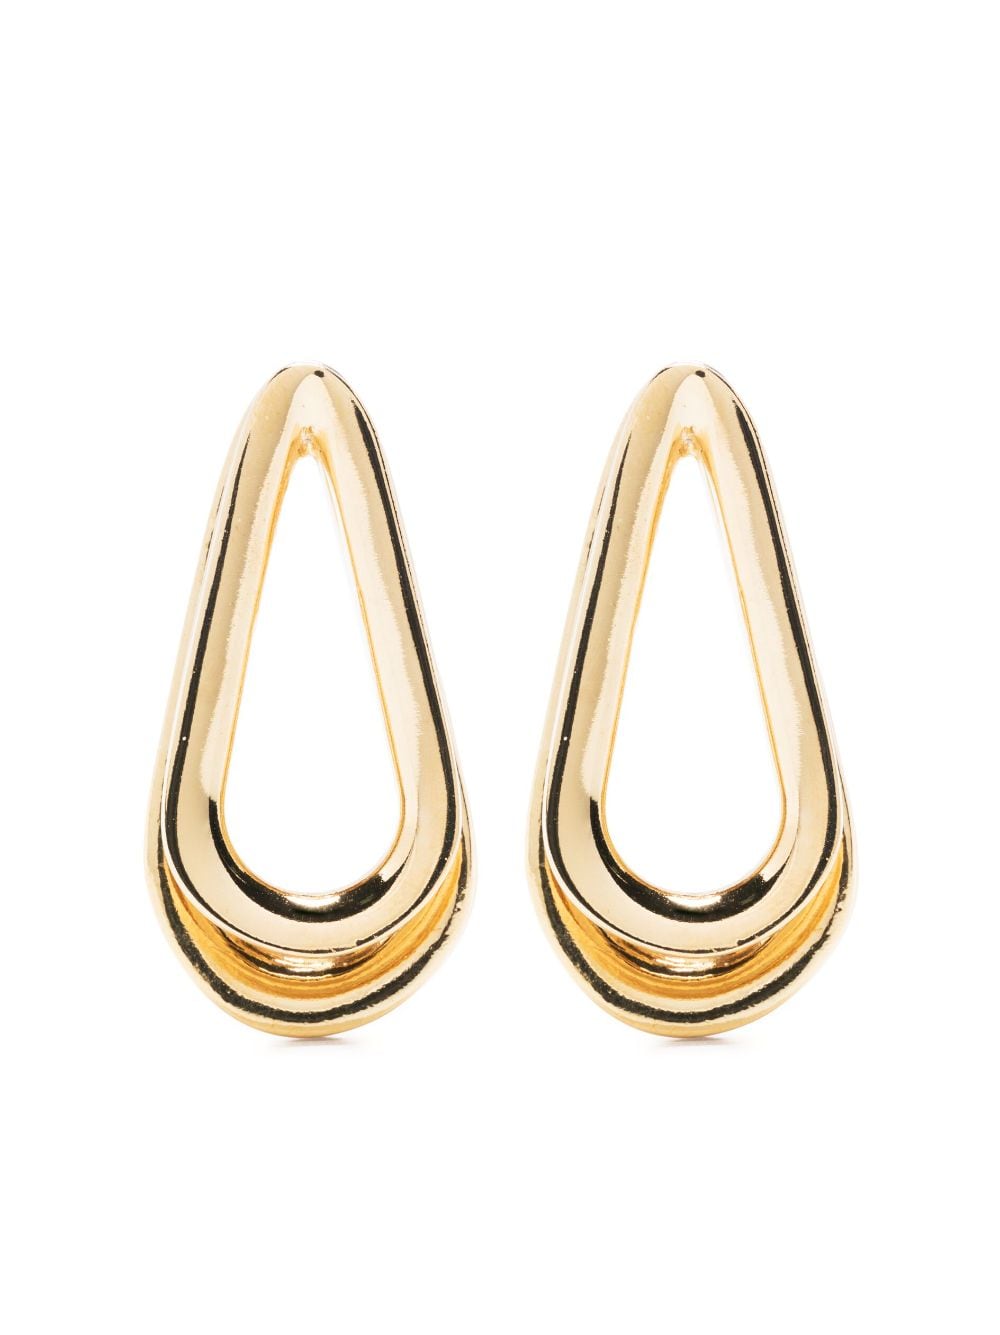 Annelise Michelson Ellipse S Double earrings - Gold